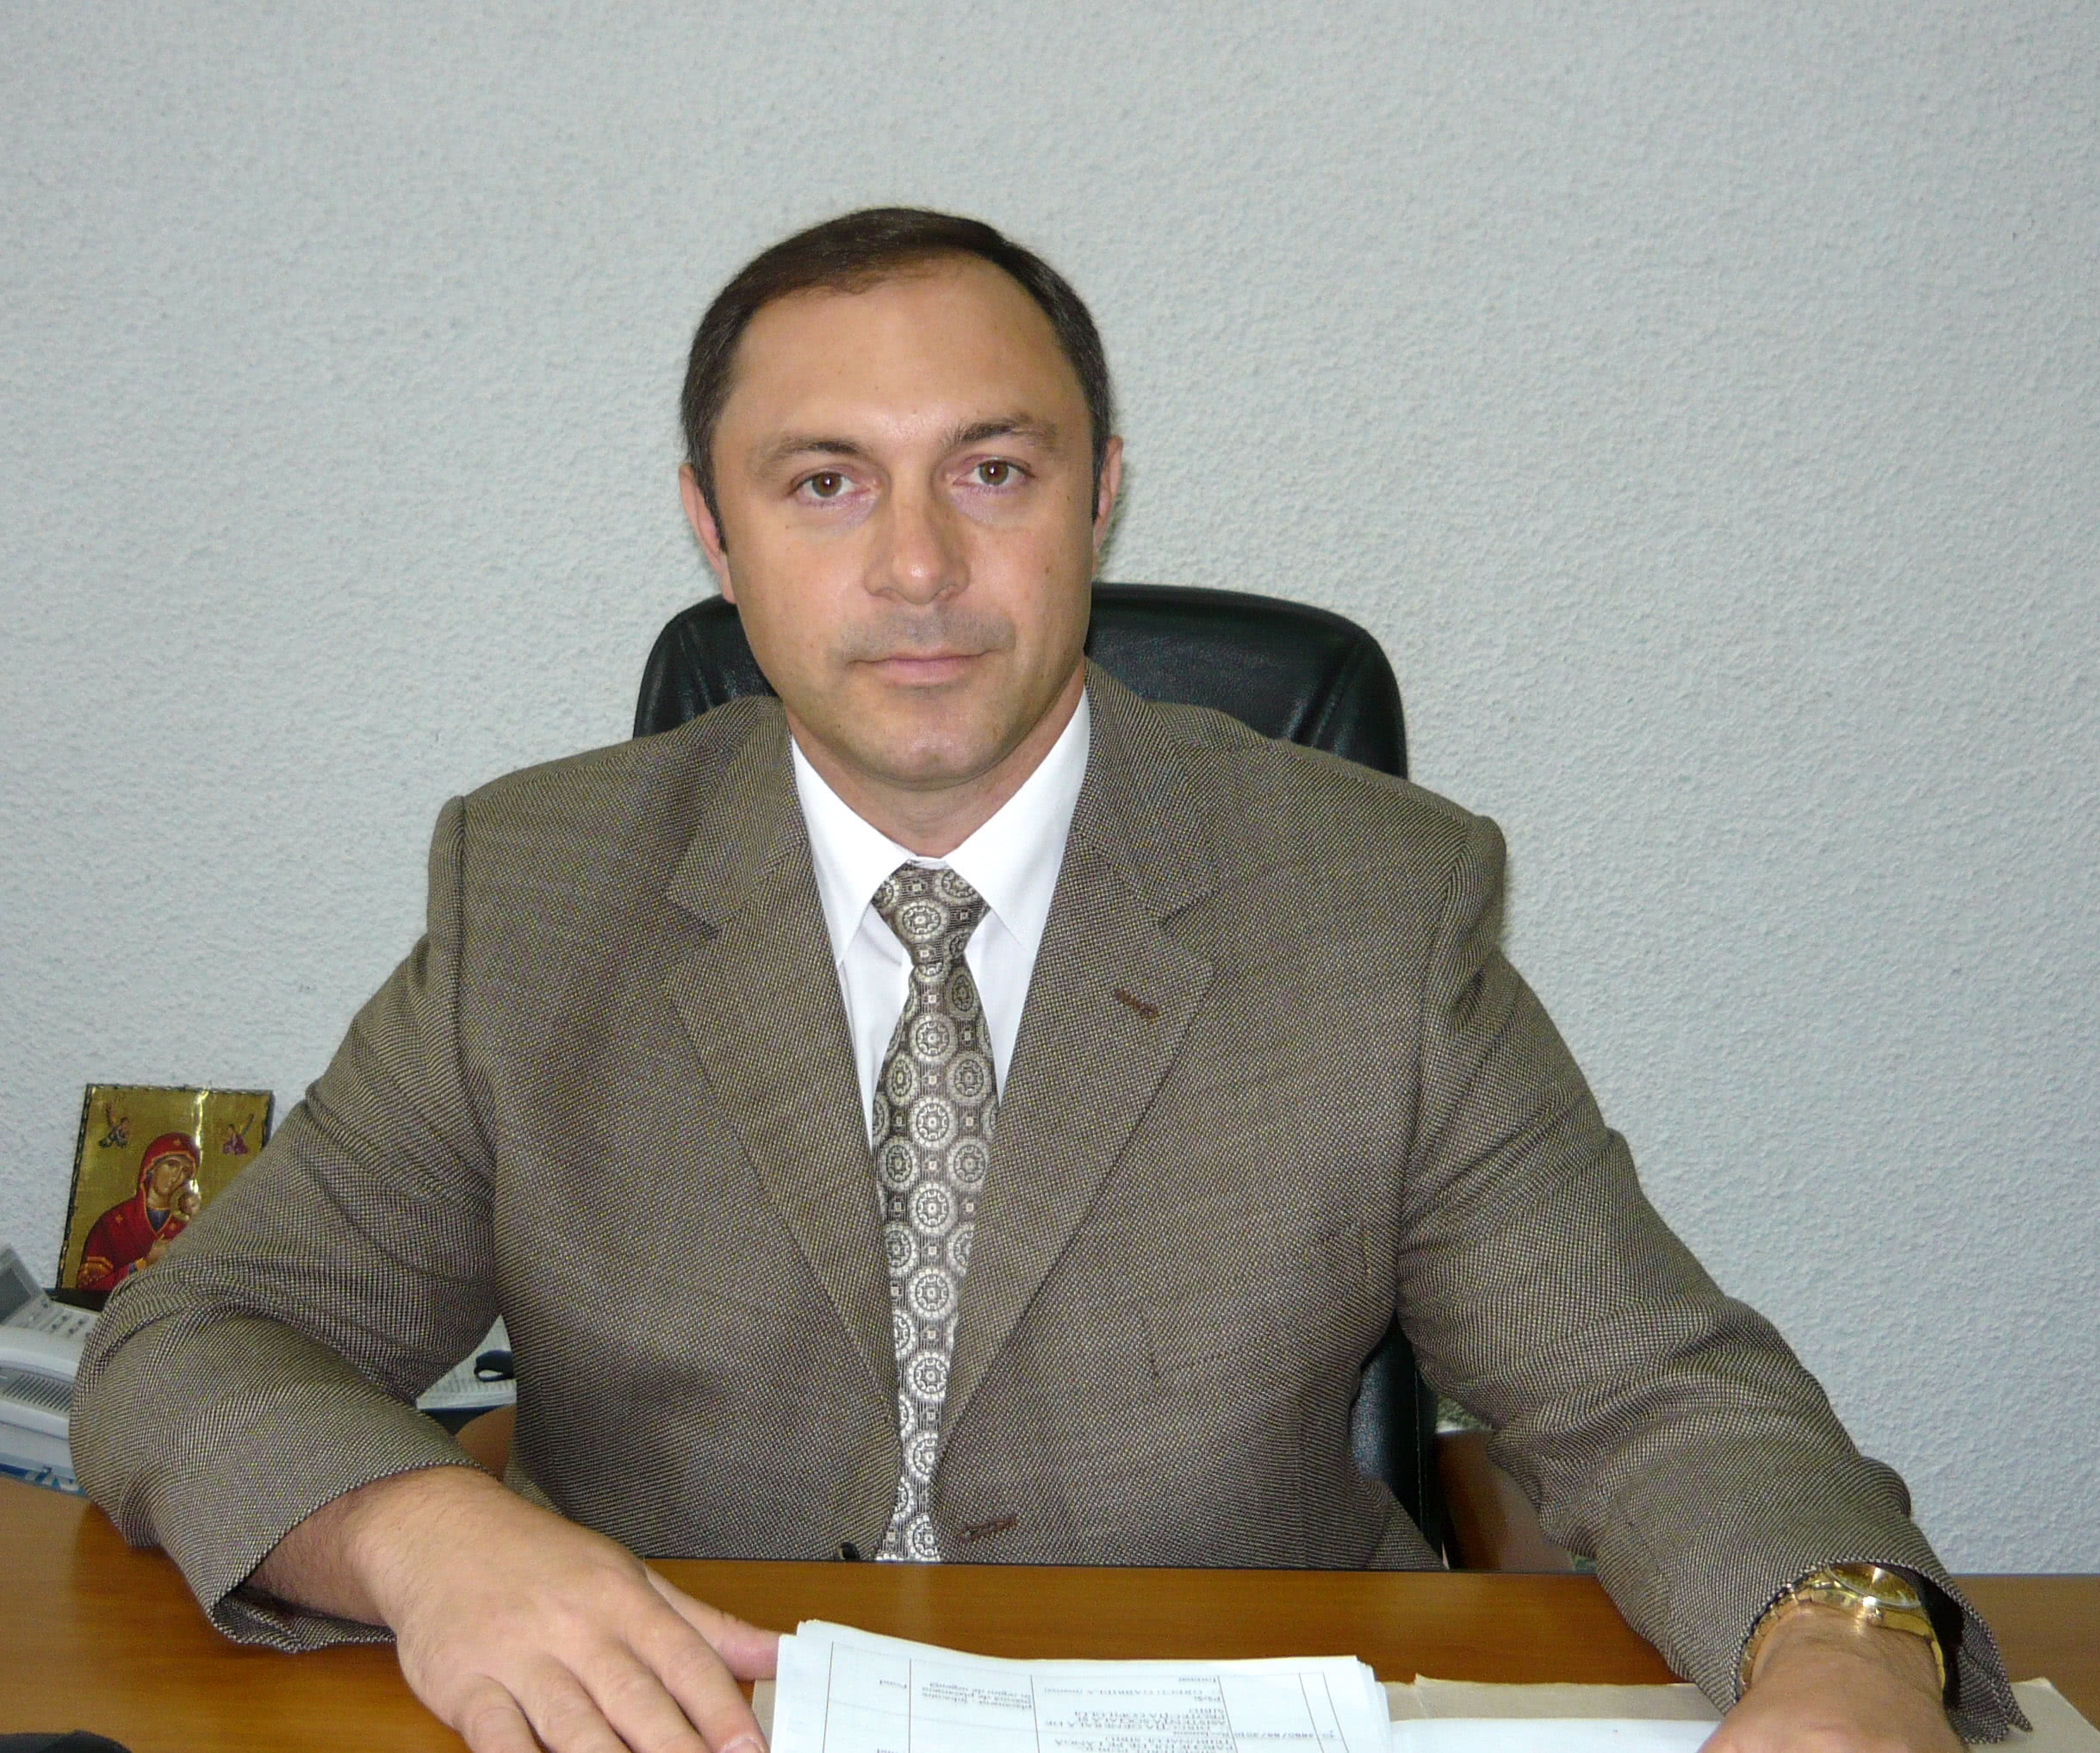 procuror IOAN-MARIUS ARON, candidat CSM 2016